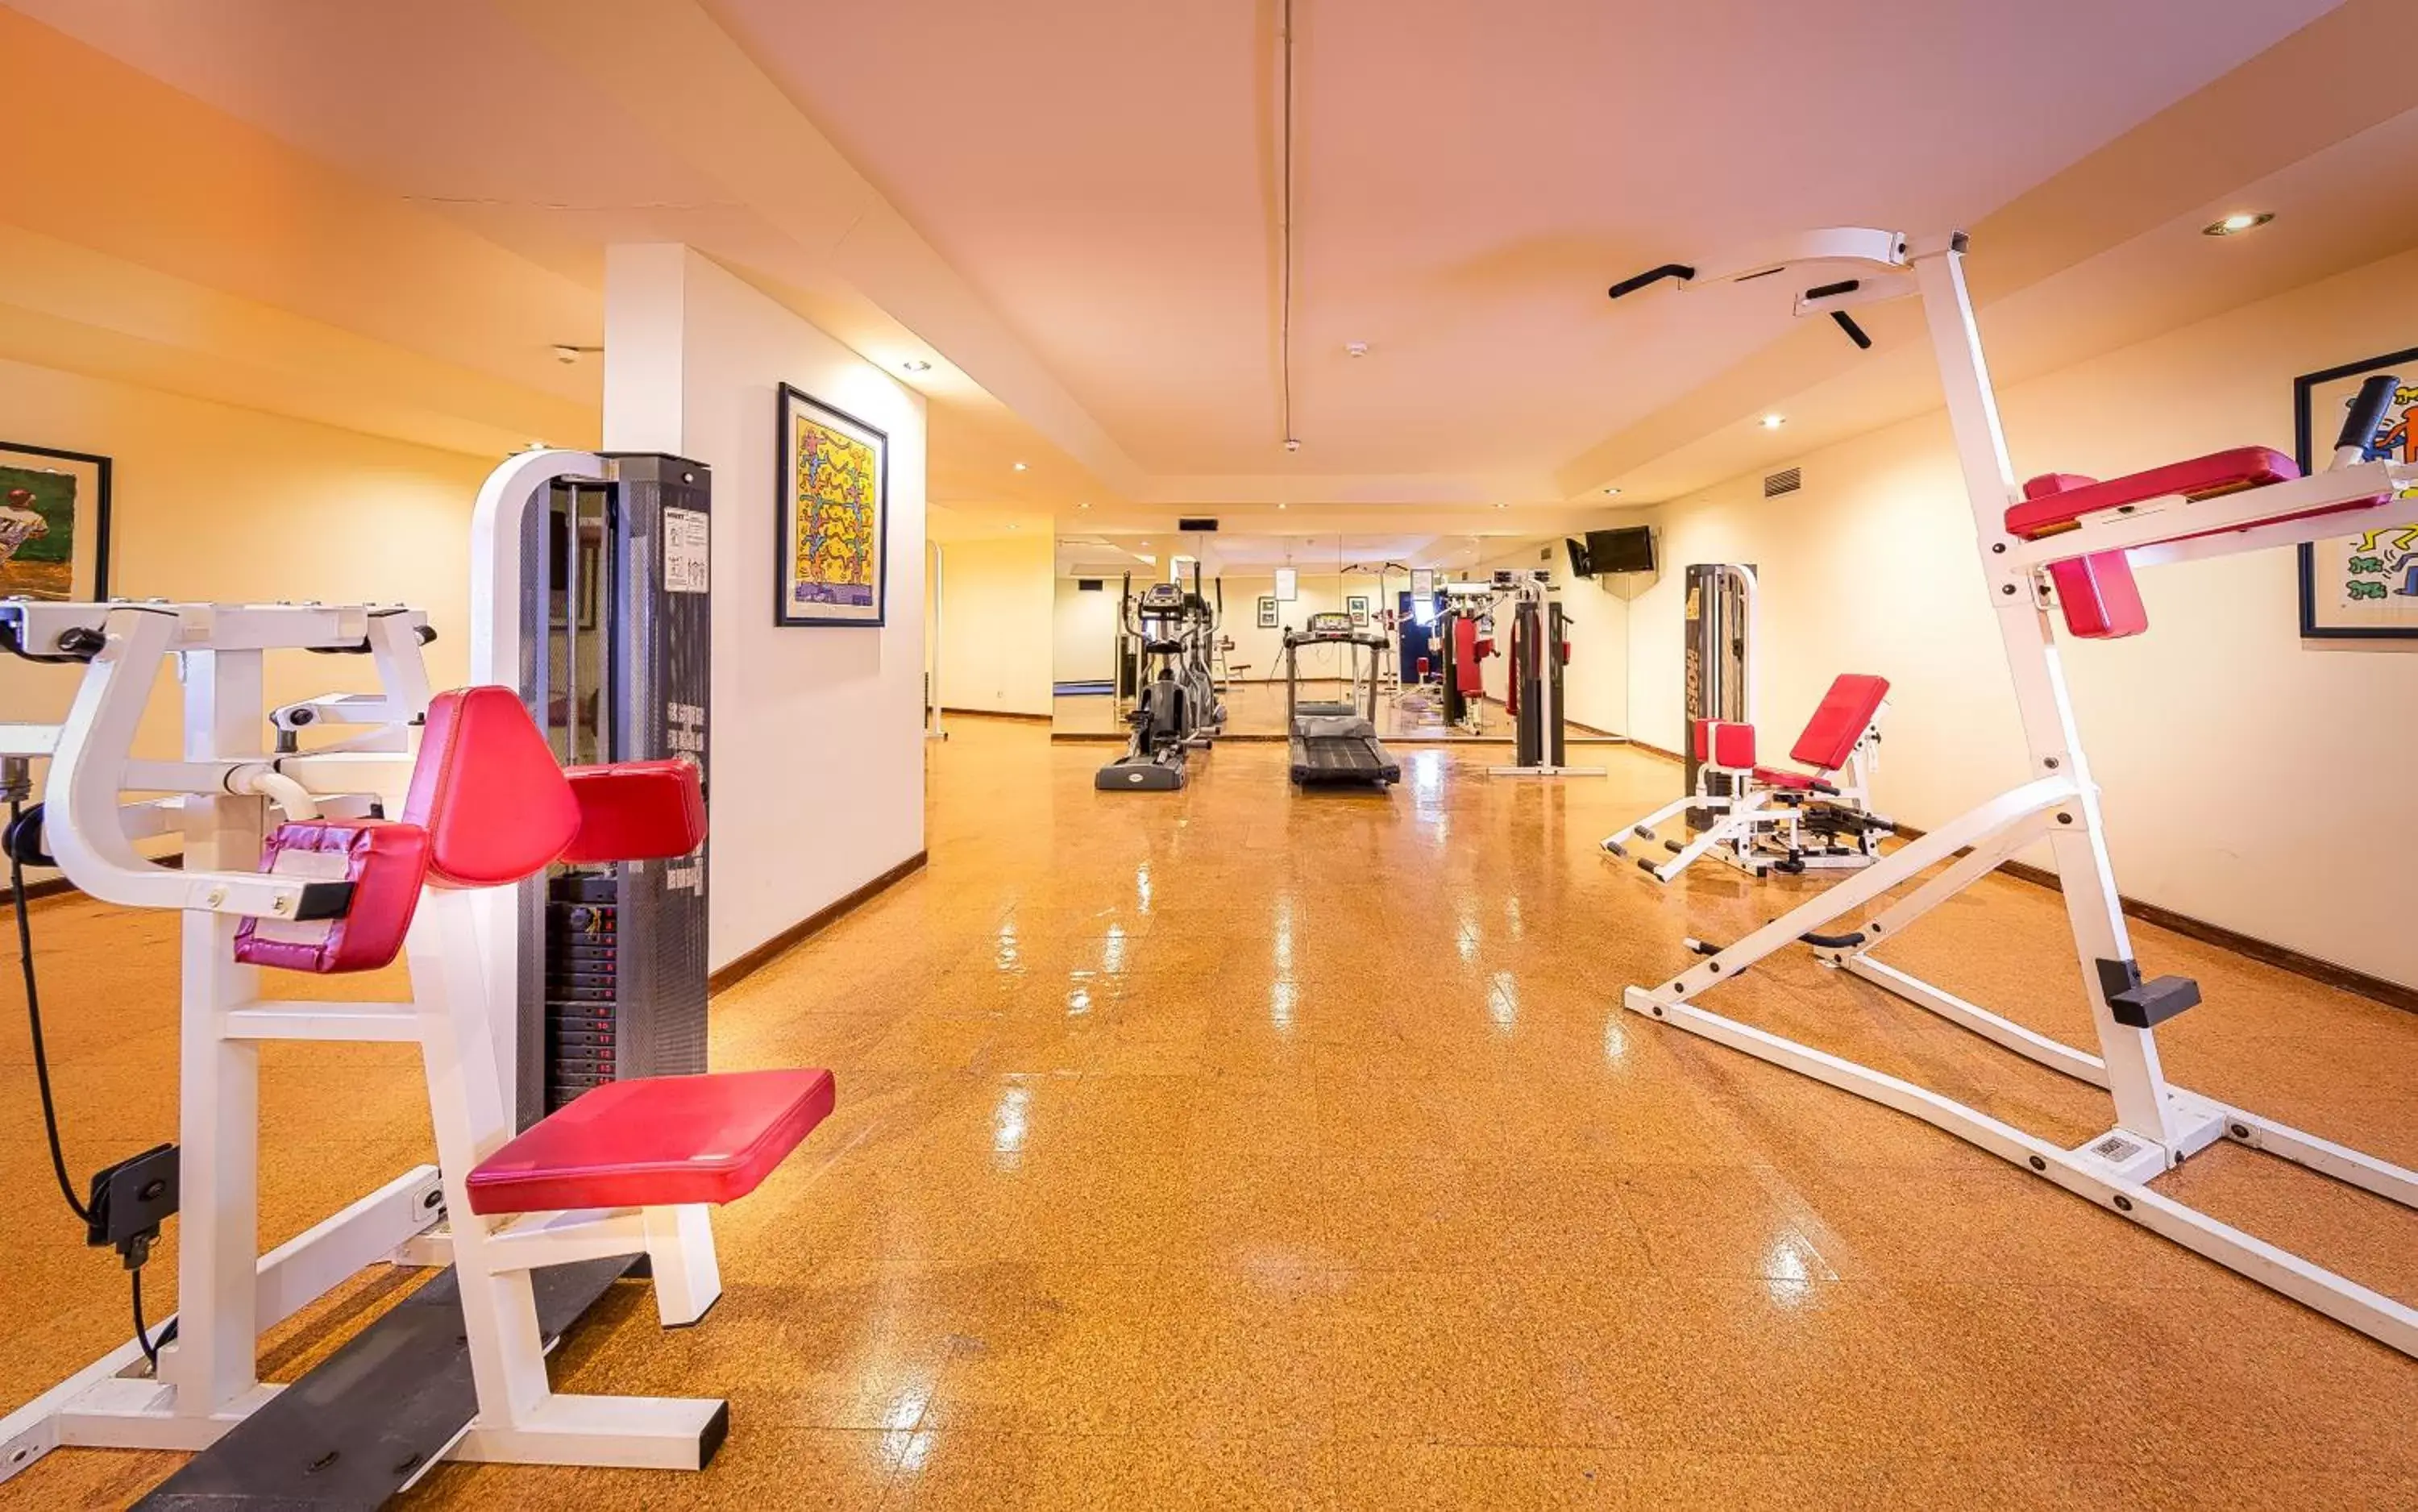 Fitness centre/facilities, Fitness Center/Facilities in Vila Gale Nautico